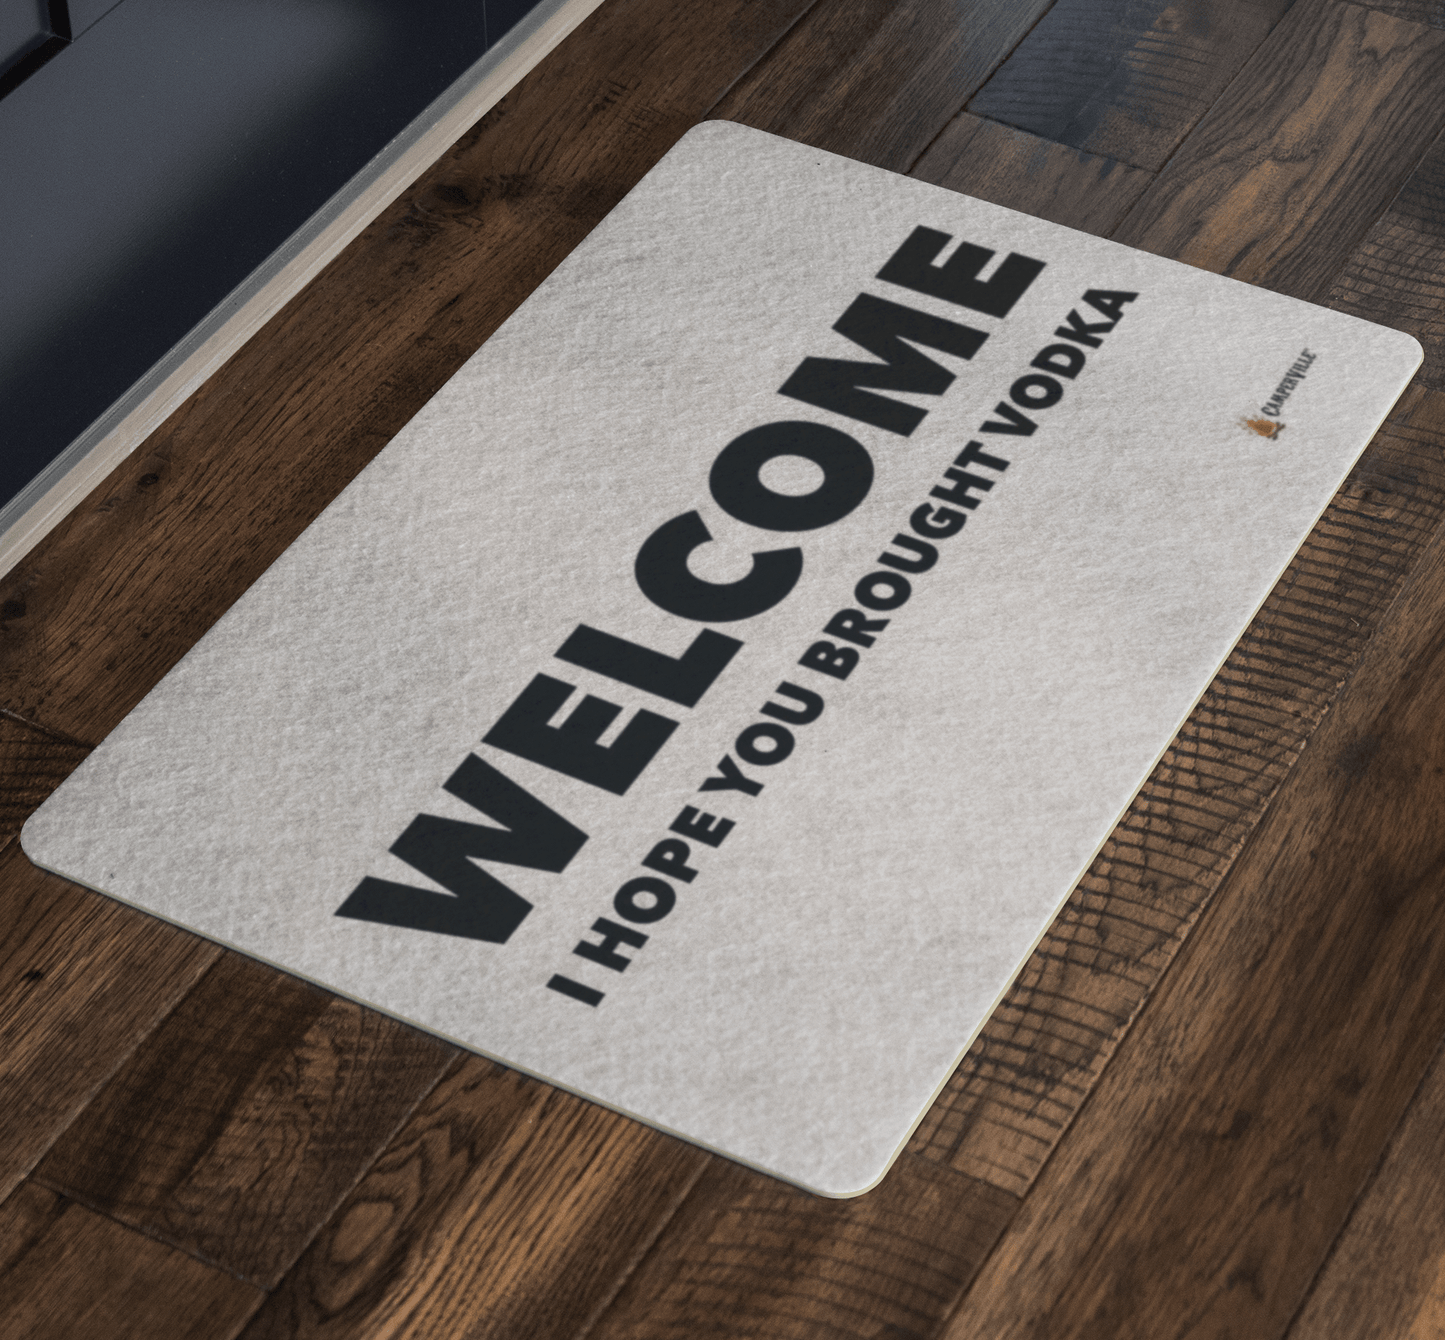 "Welcome - I Hope You Brought Vodka" Doormat